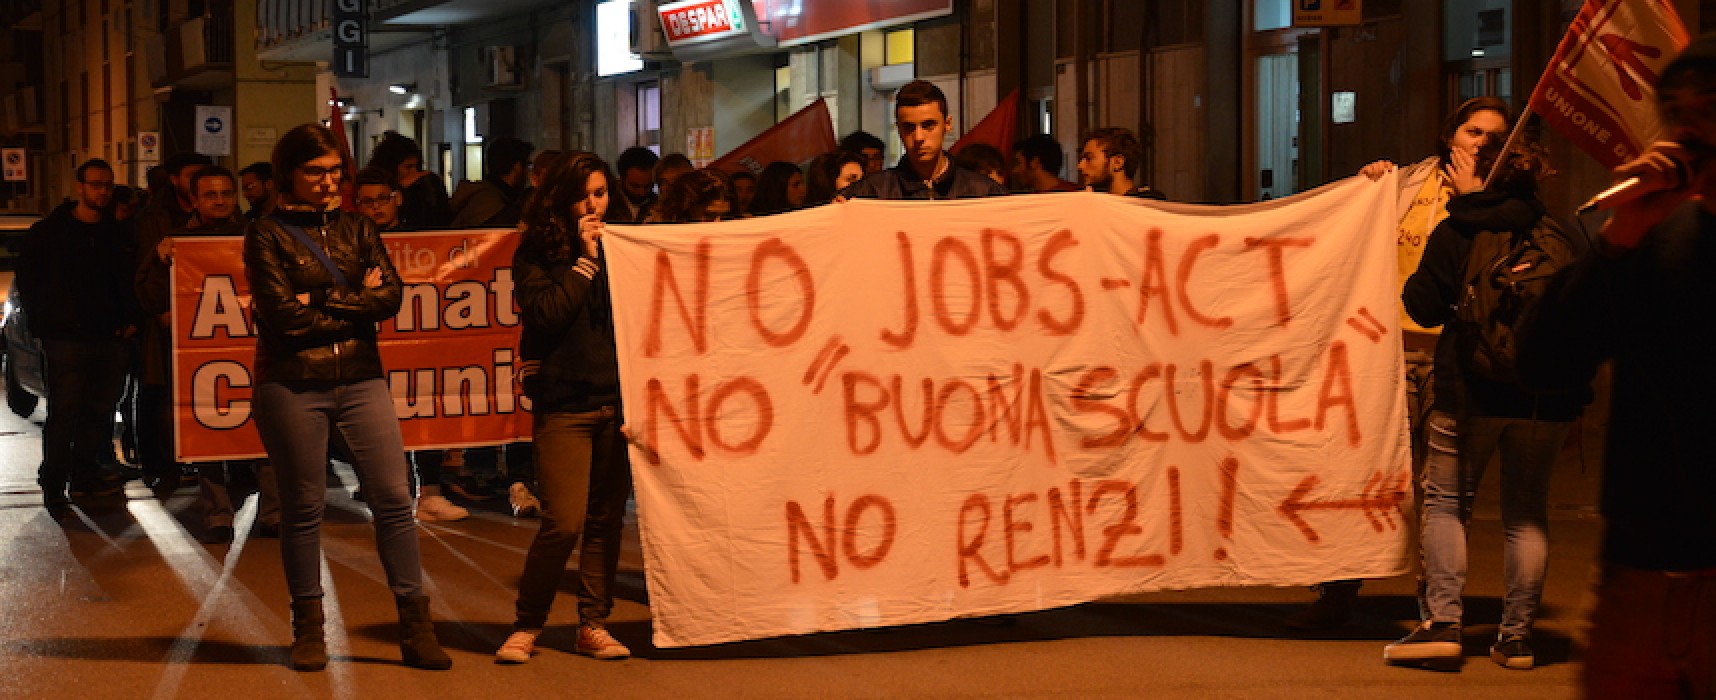 Studenti e lavoratori scendono in piazza per manifestare contro il governo Renzi